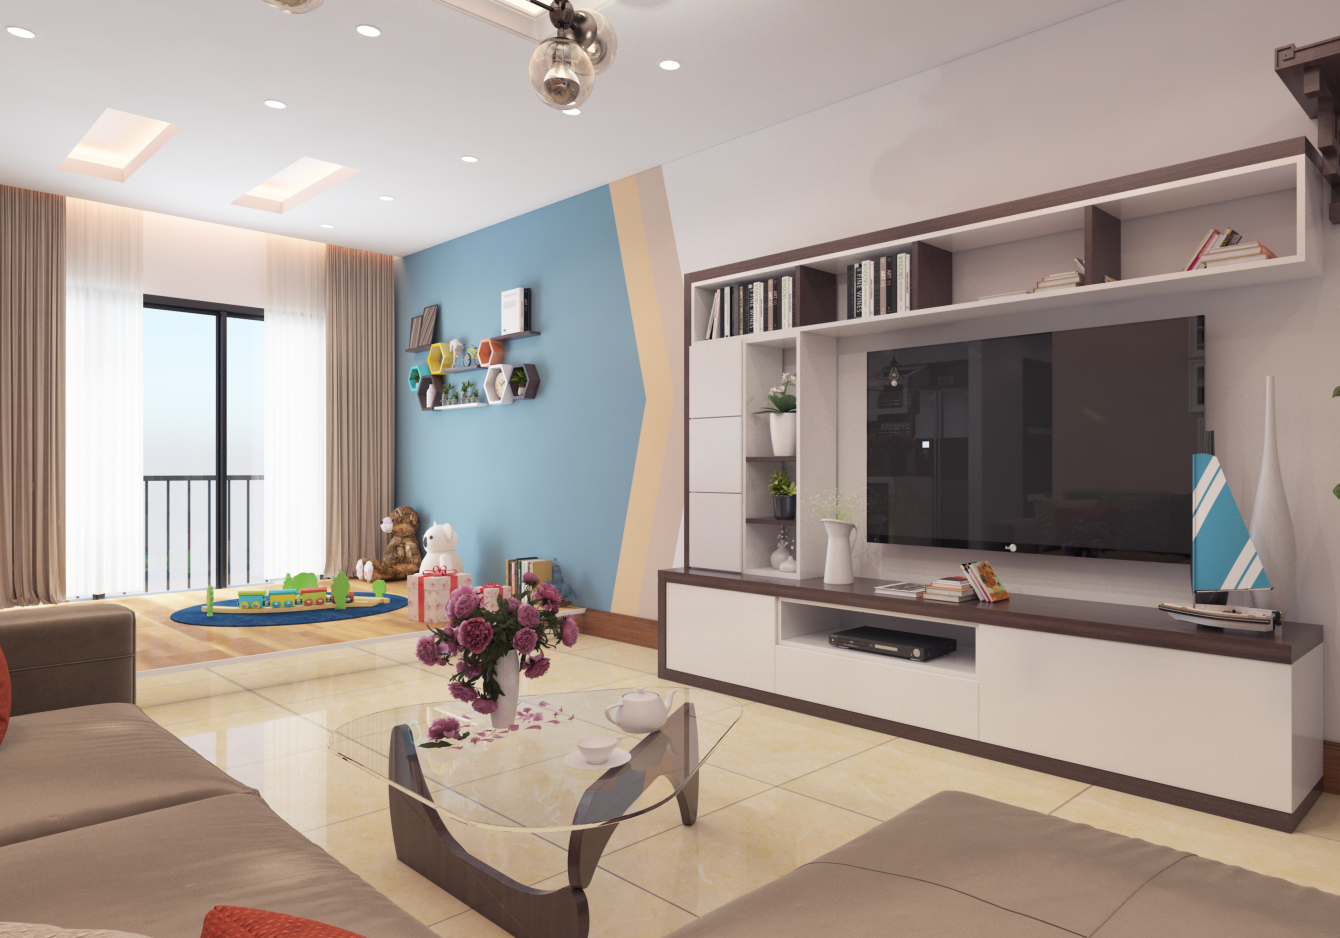 Phong cách thiết kế nội thất chung cư tại Hà Nội sang trọng - đẳng cấp